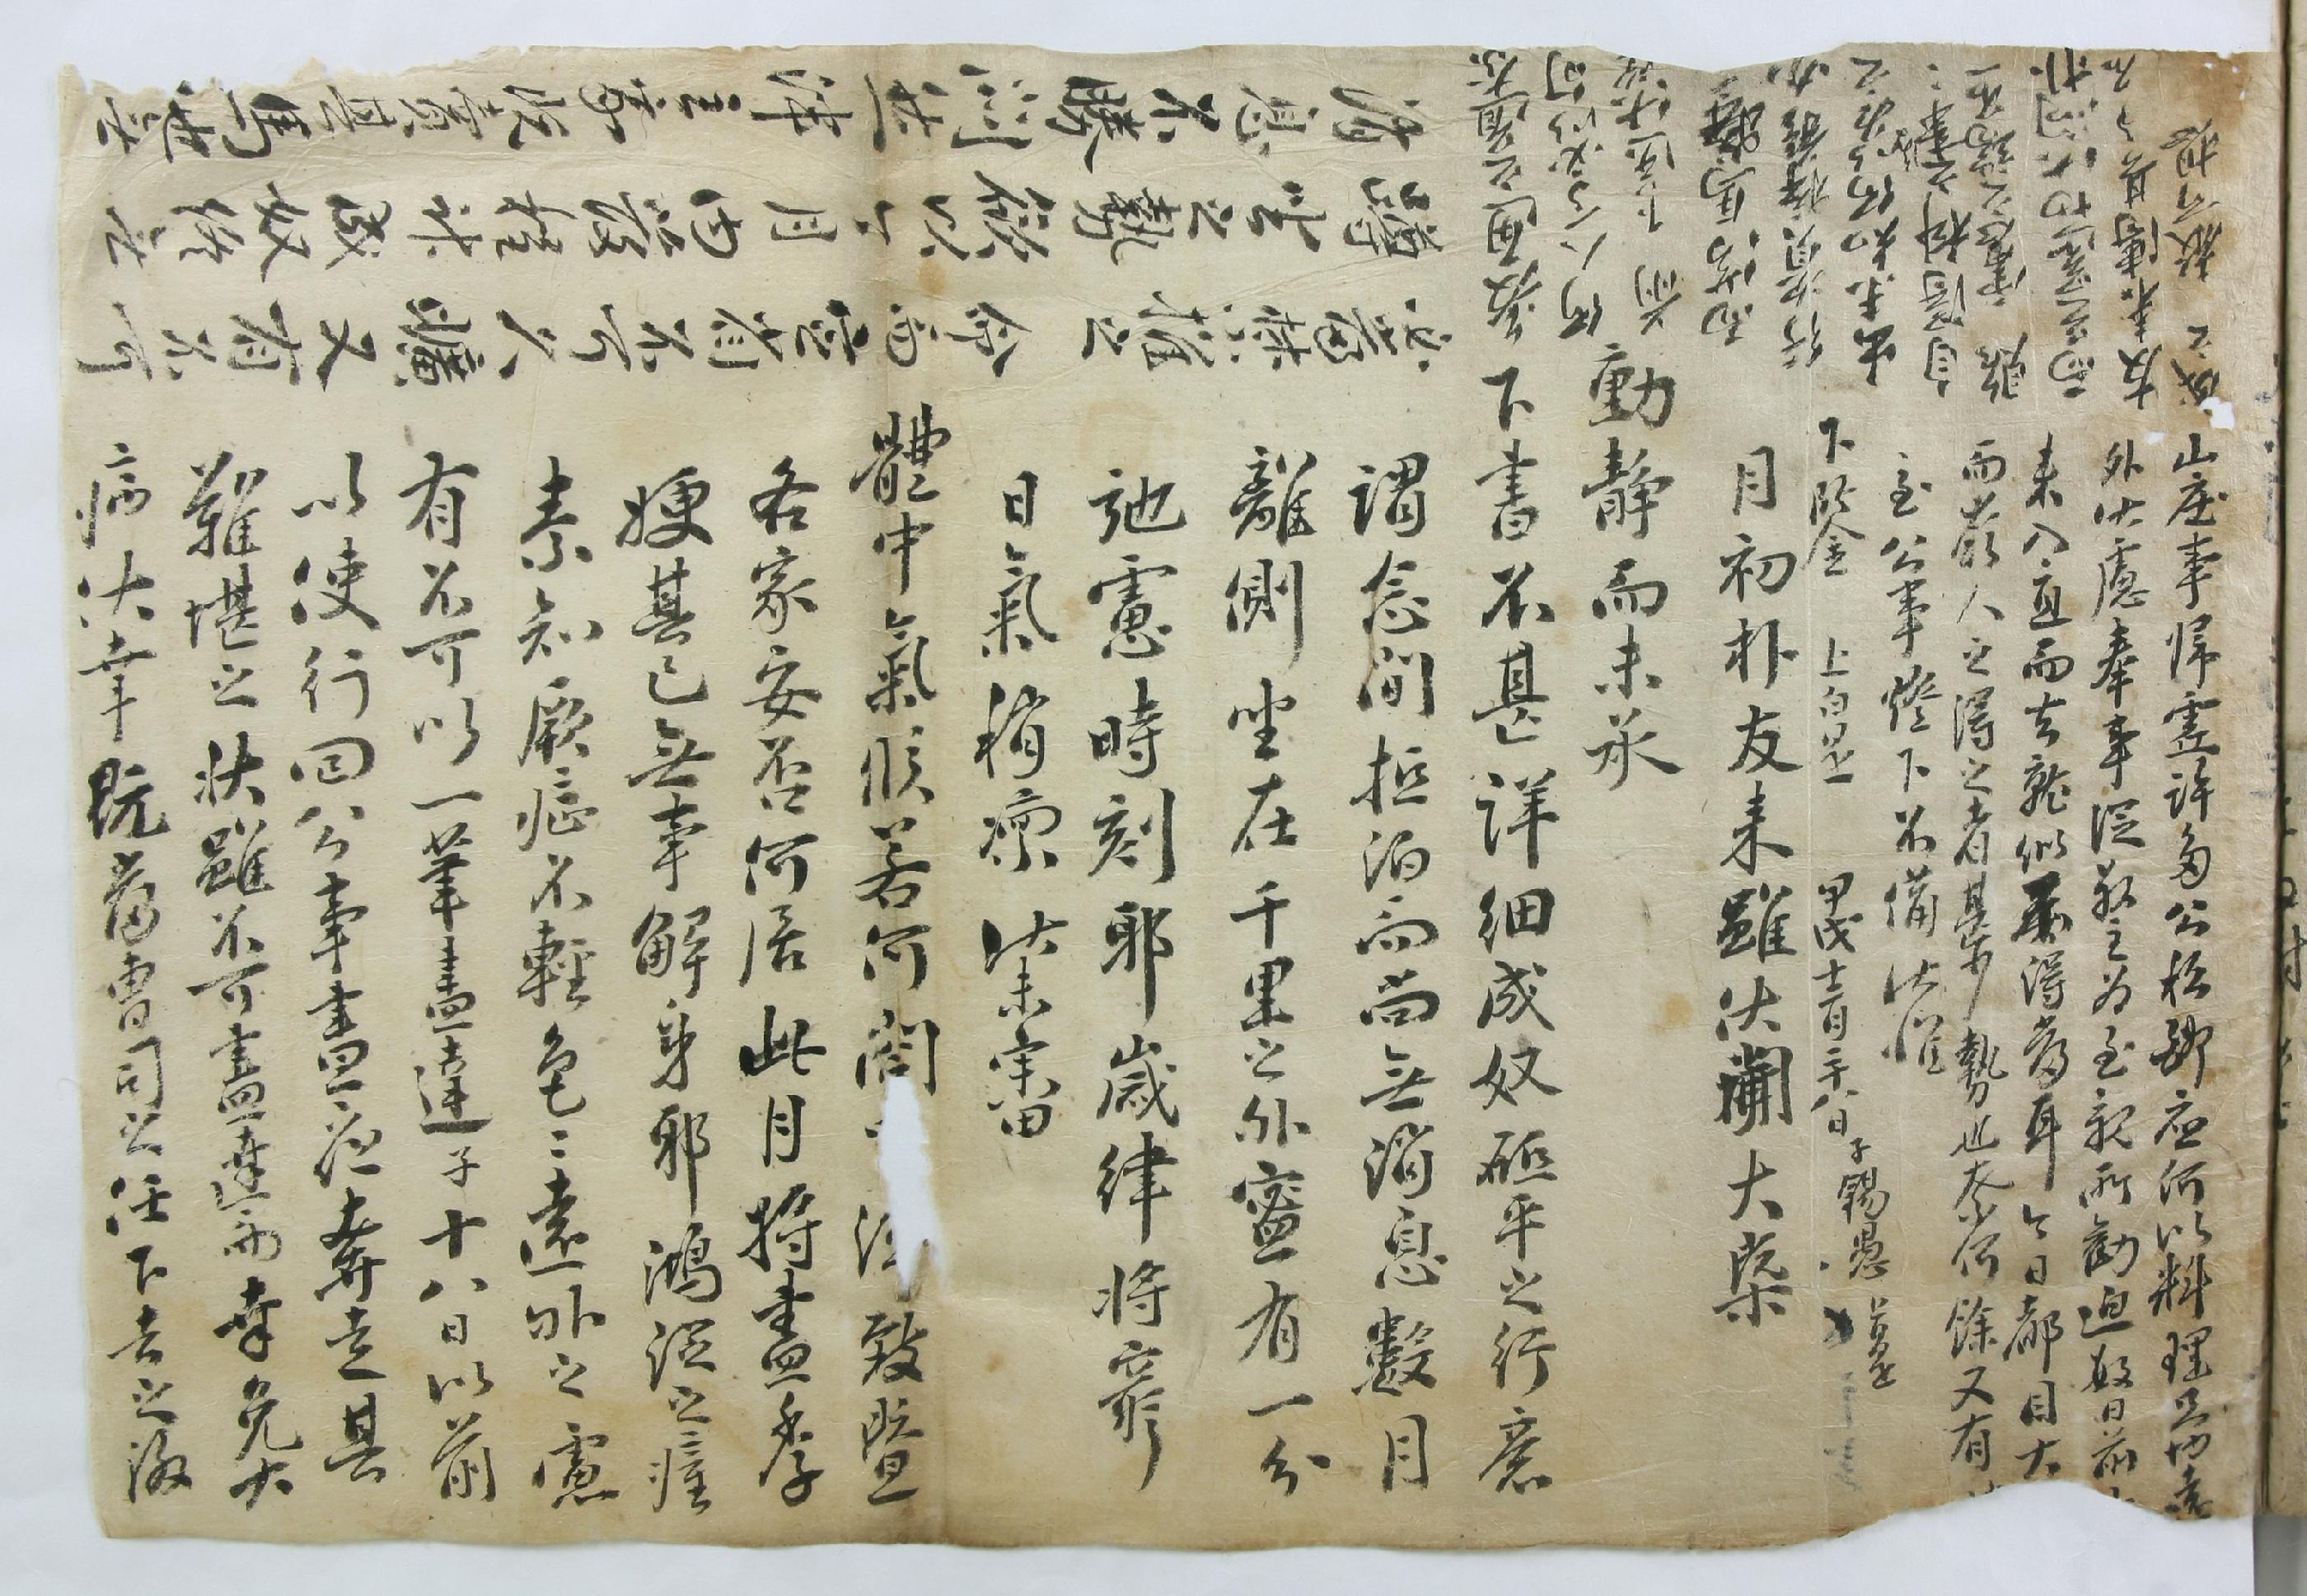 조석우(趙錫愚)가 1754년에 쓴 부모님 전상서